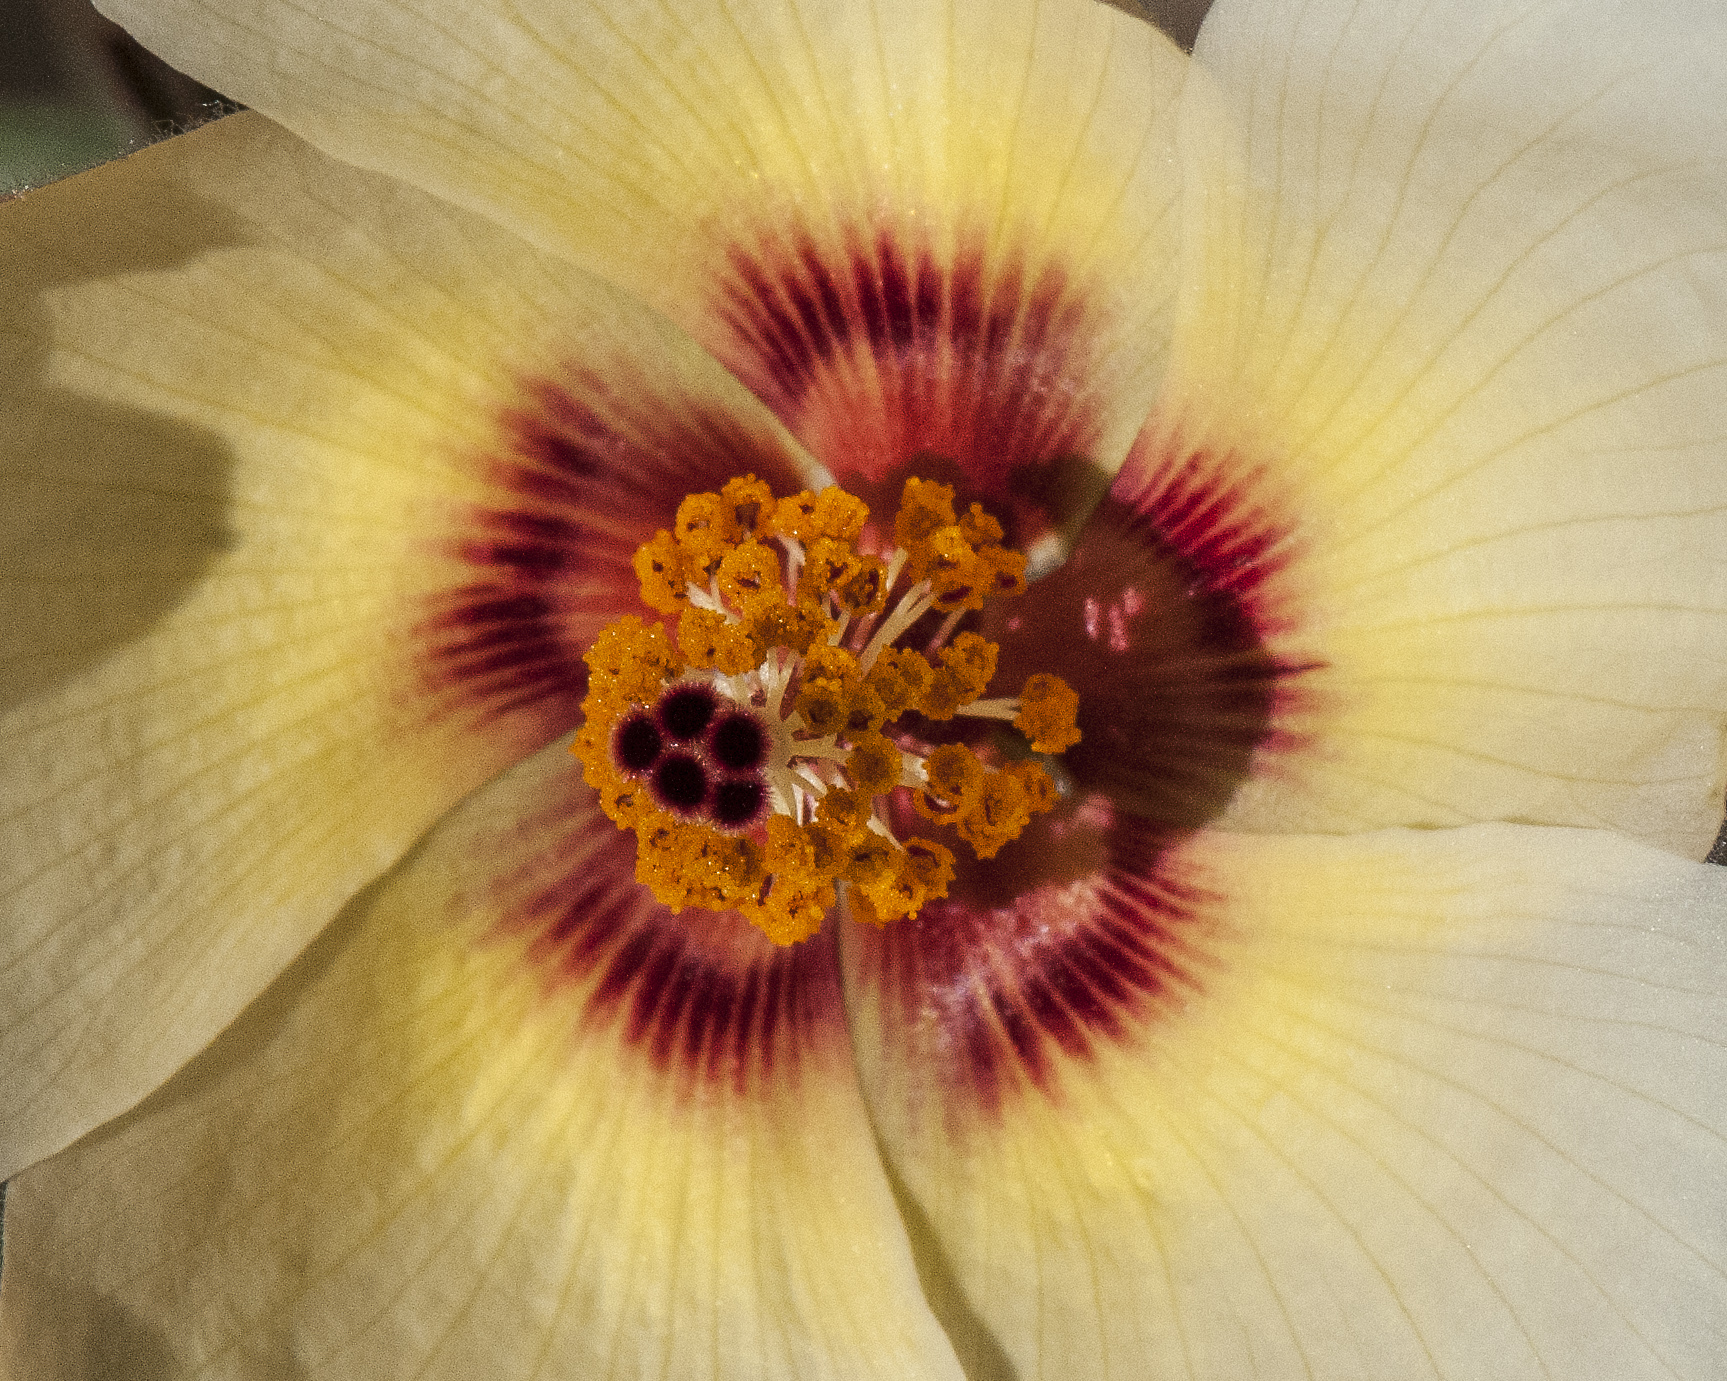 Desert Rosemallow Flower